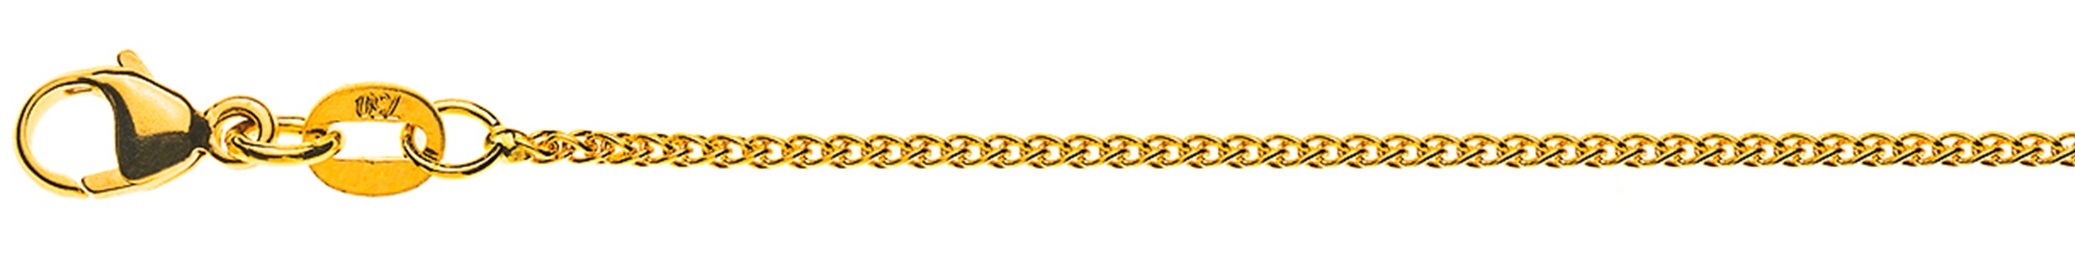 AURONOS Élégance Necklace yellow gold 14K cable chain 40cm 1.2mm